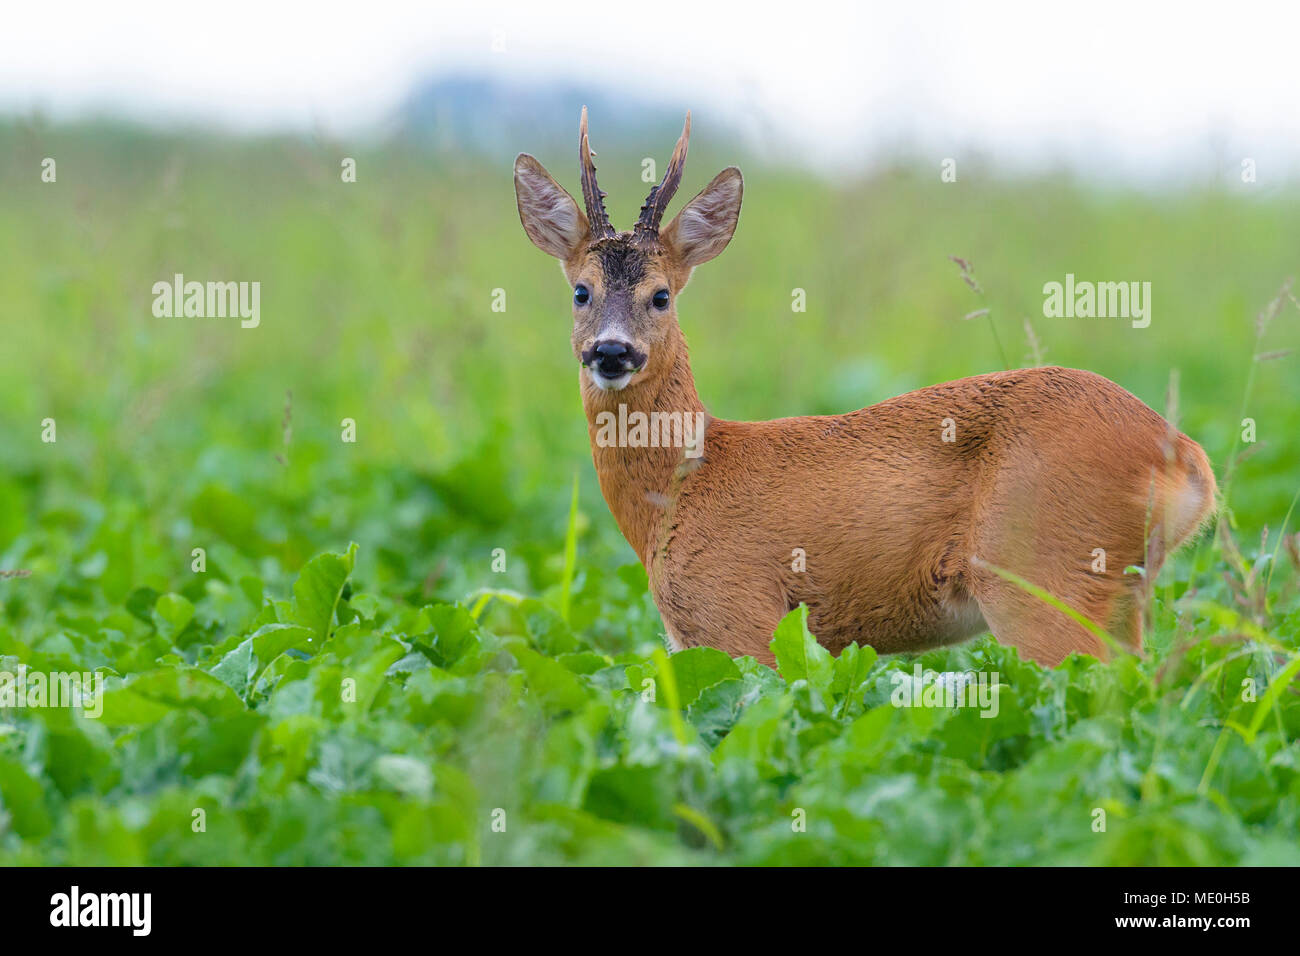 Close-up portrait of roebuck, western roe deer (Capreolus capreolus) standing in field in summer in Hesse, Germany Stock Photo